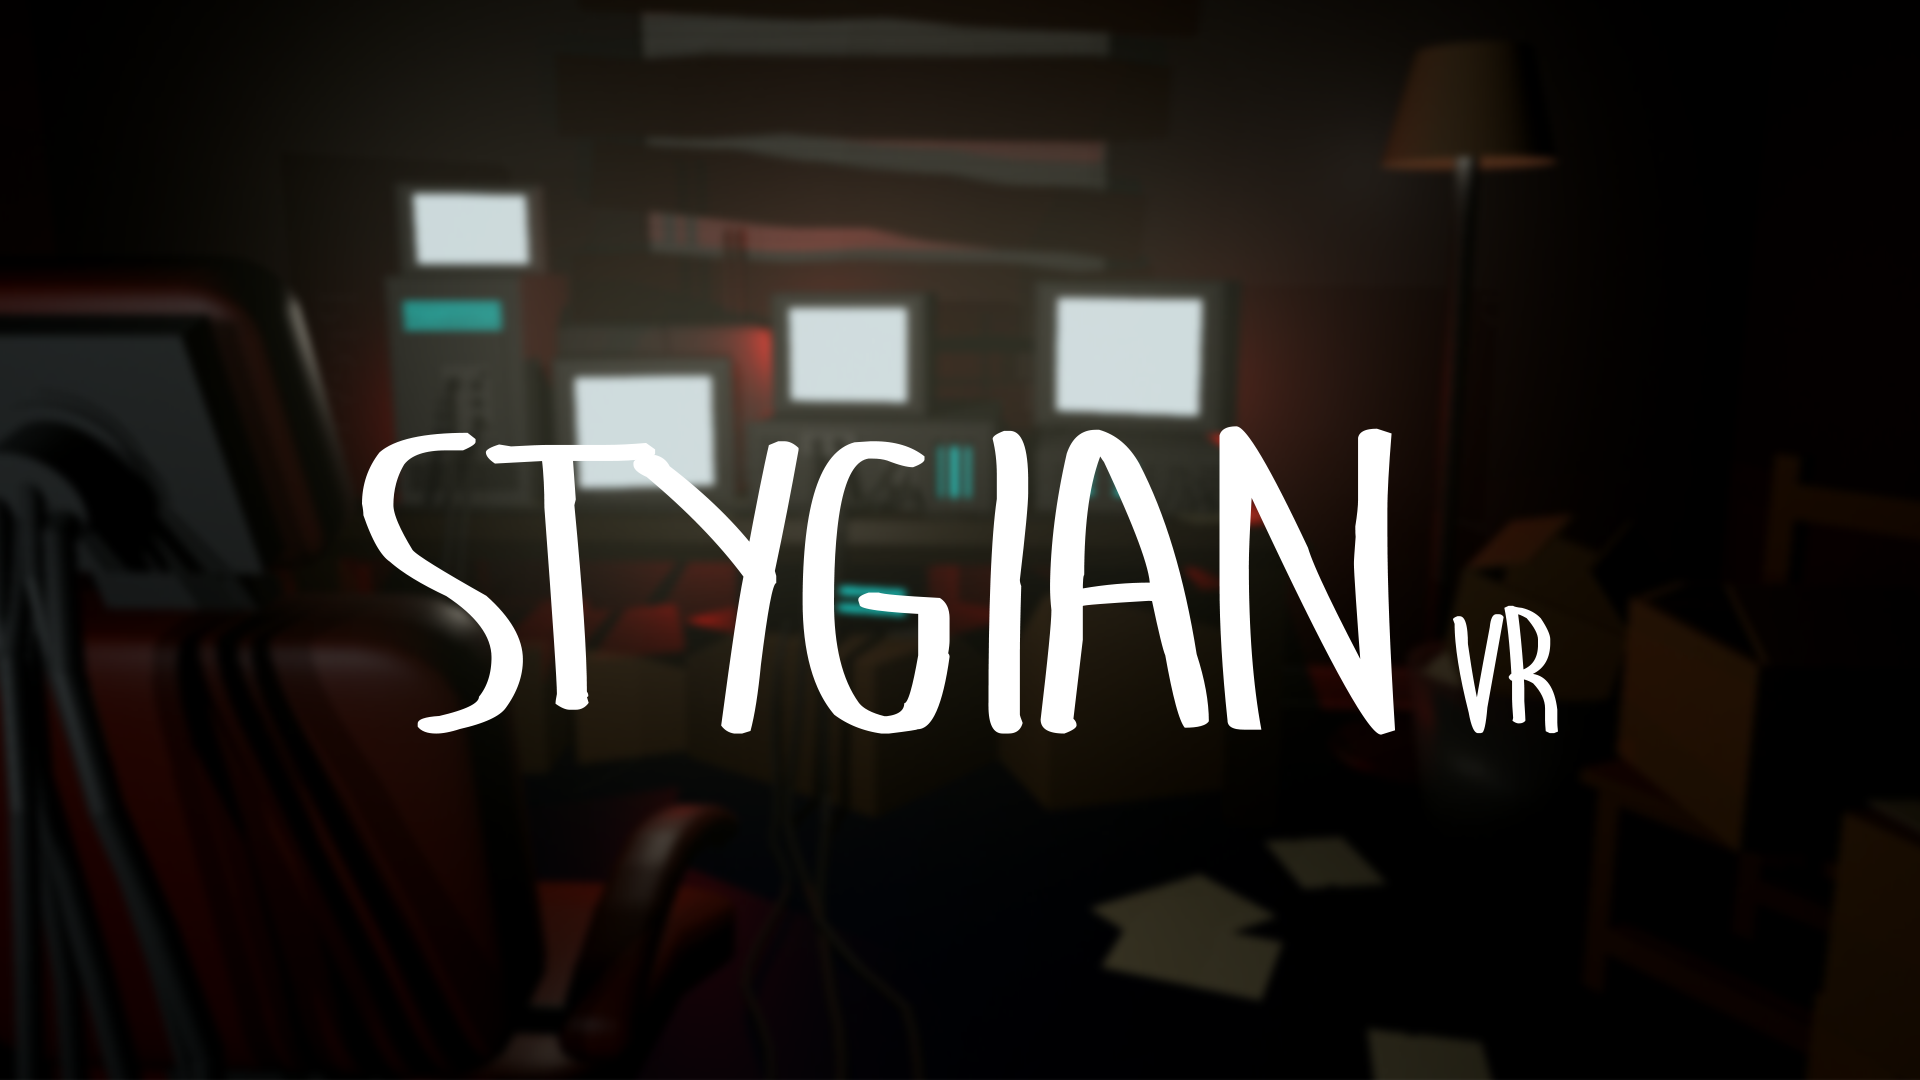 stygian steam download free